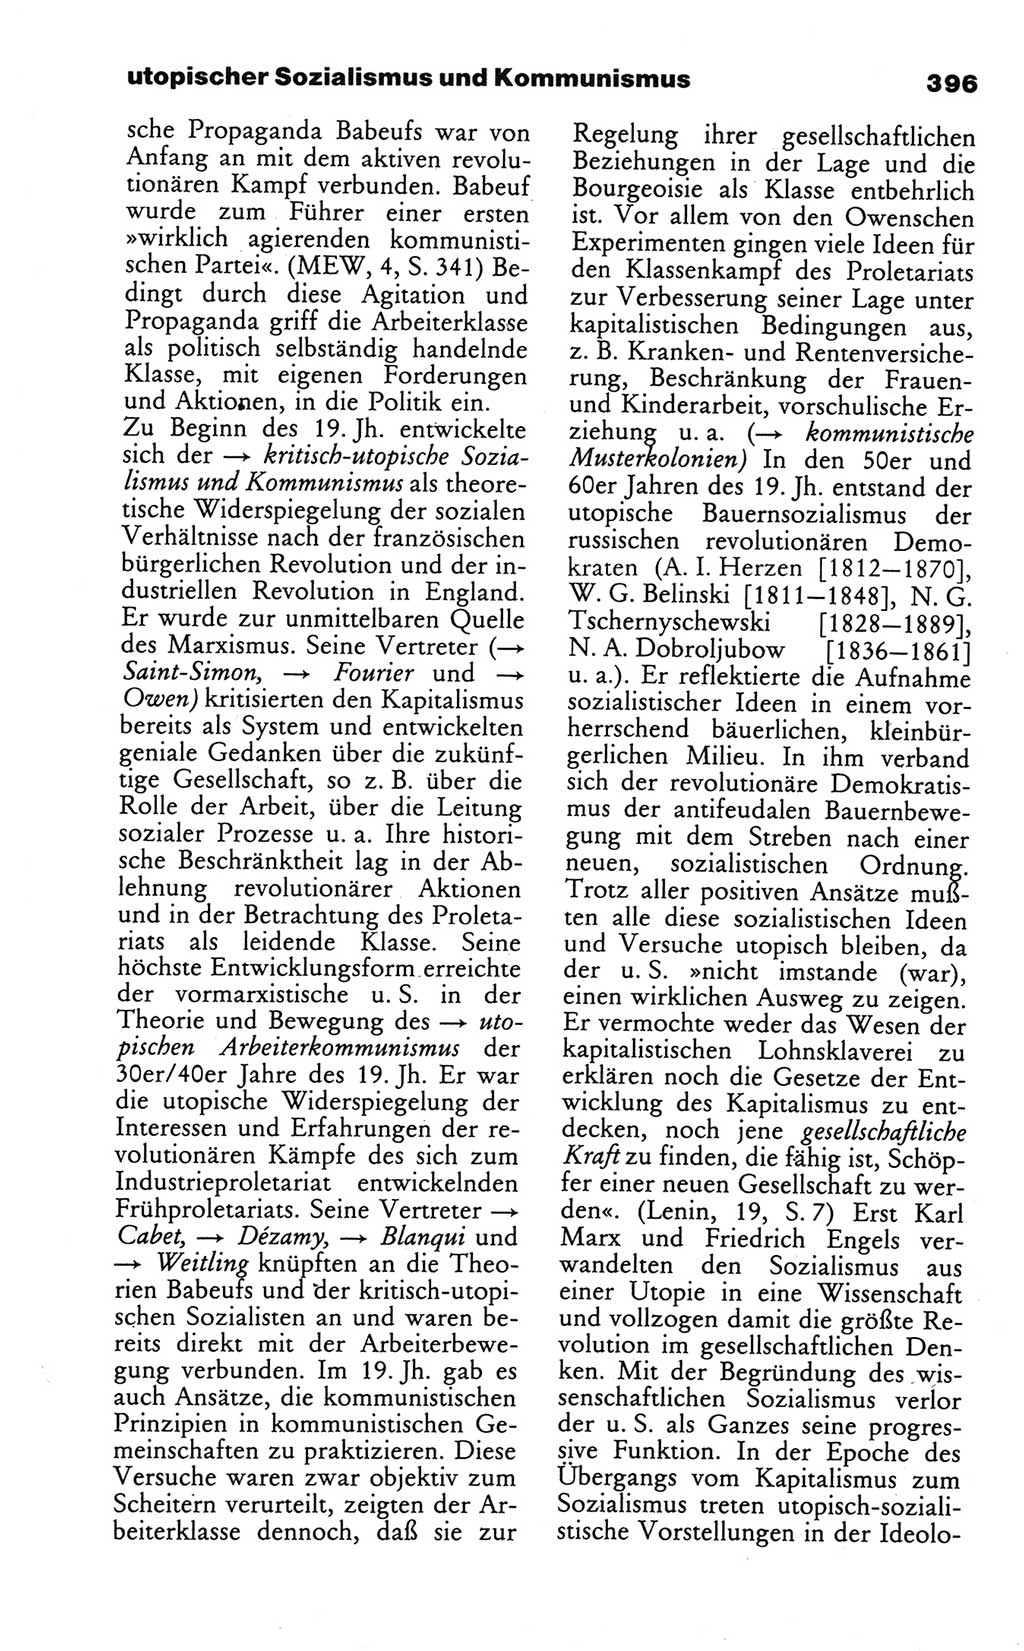 Wörterbuch des wissenschaftlichen Kommunismus [Deutsche Demokratische Republik (DDR)] 1984, Seite 396 (Wb. wiss. Komm. DDR 1984, S. 396)